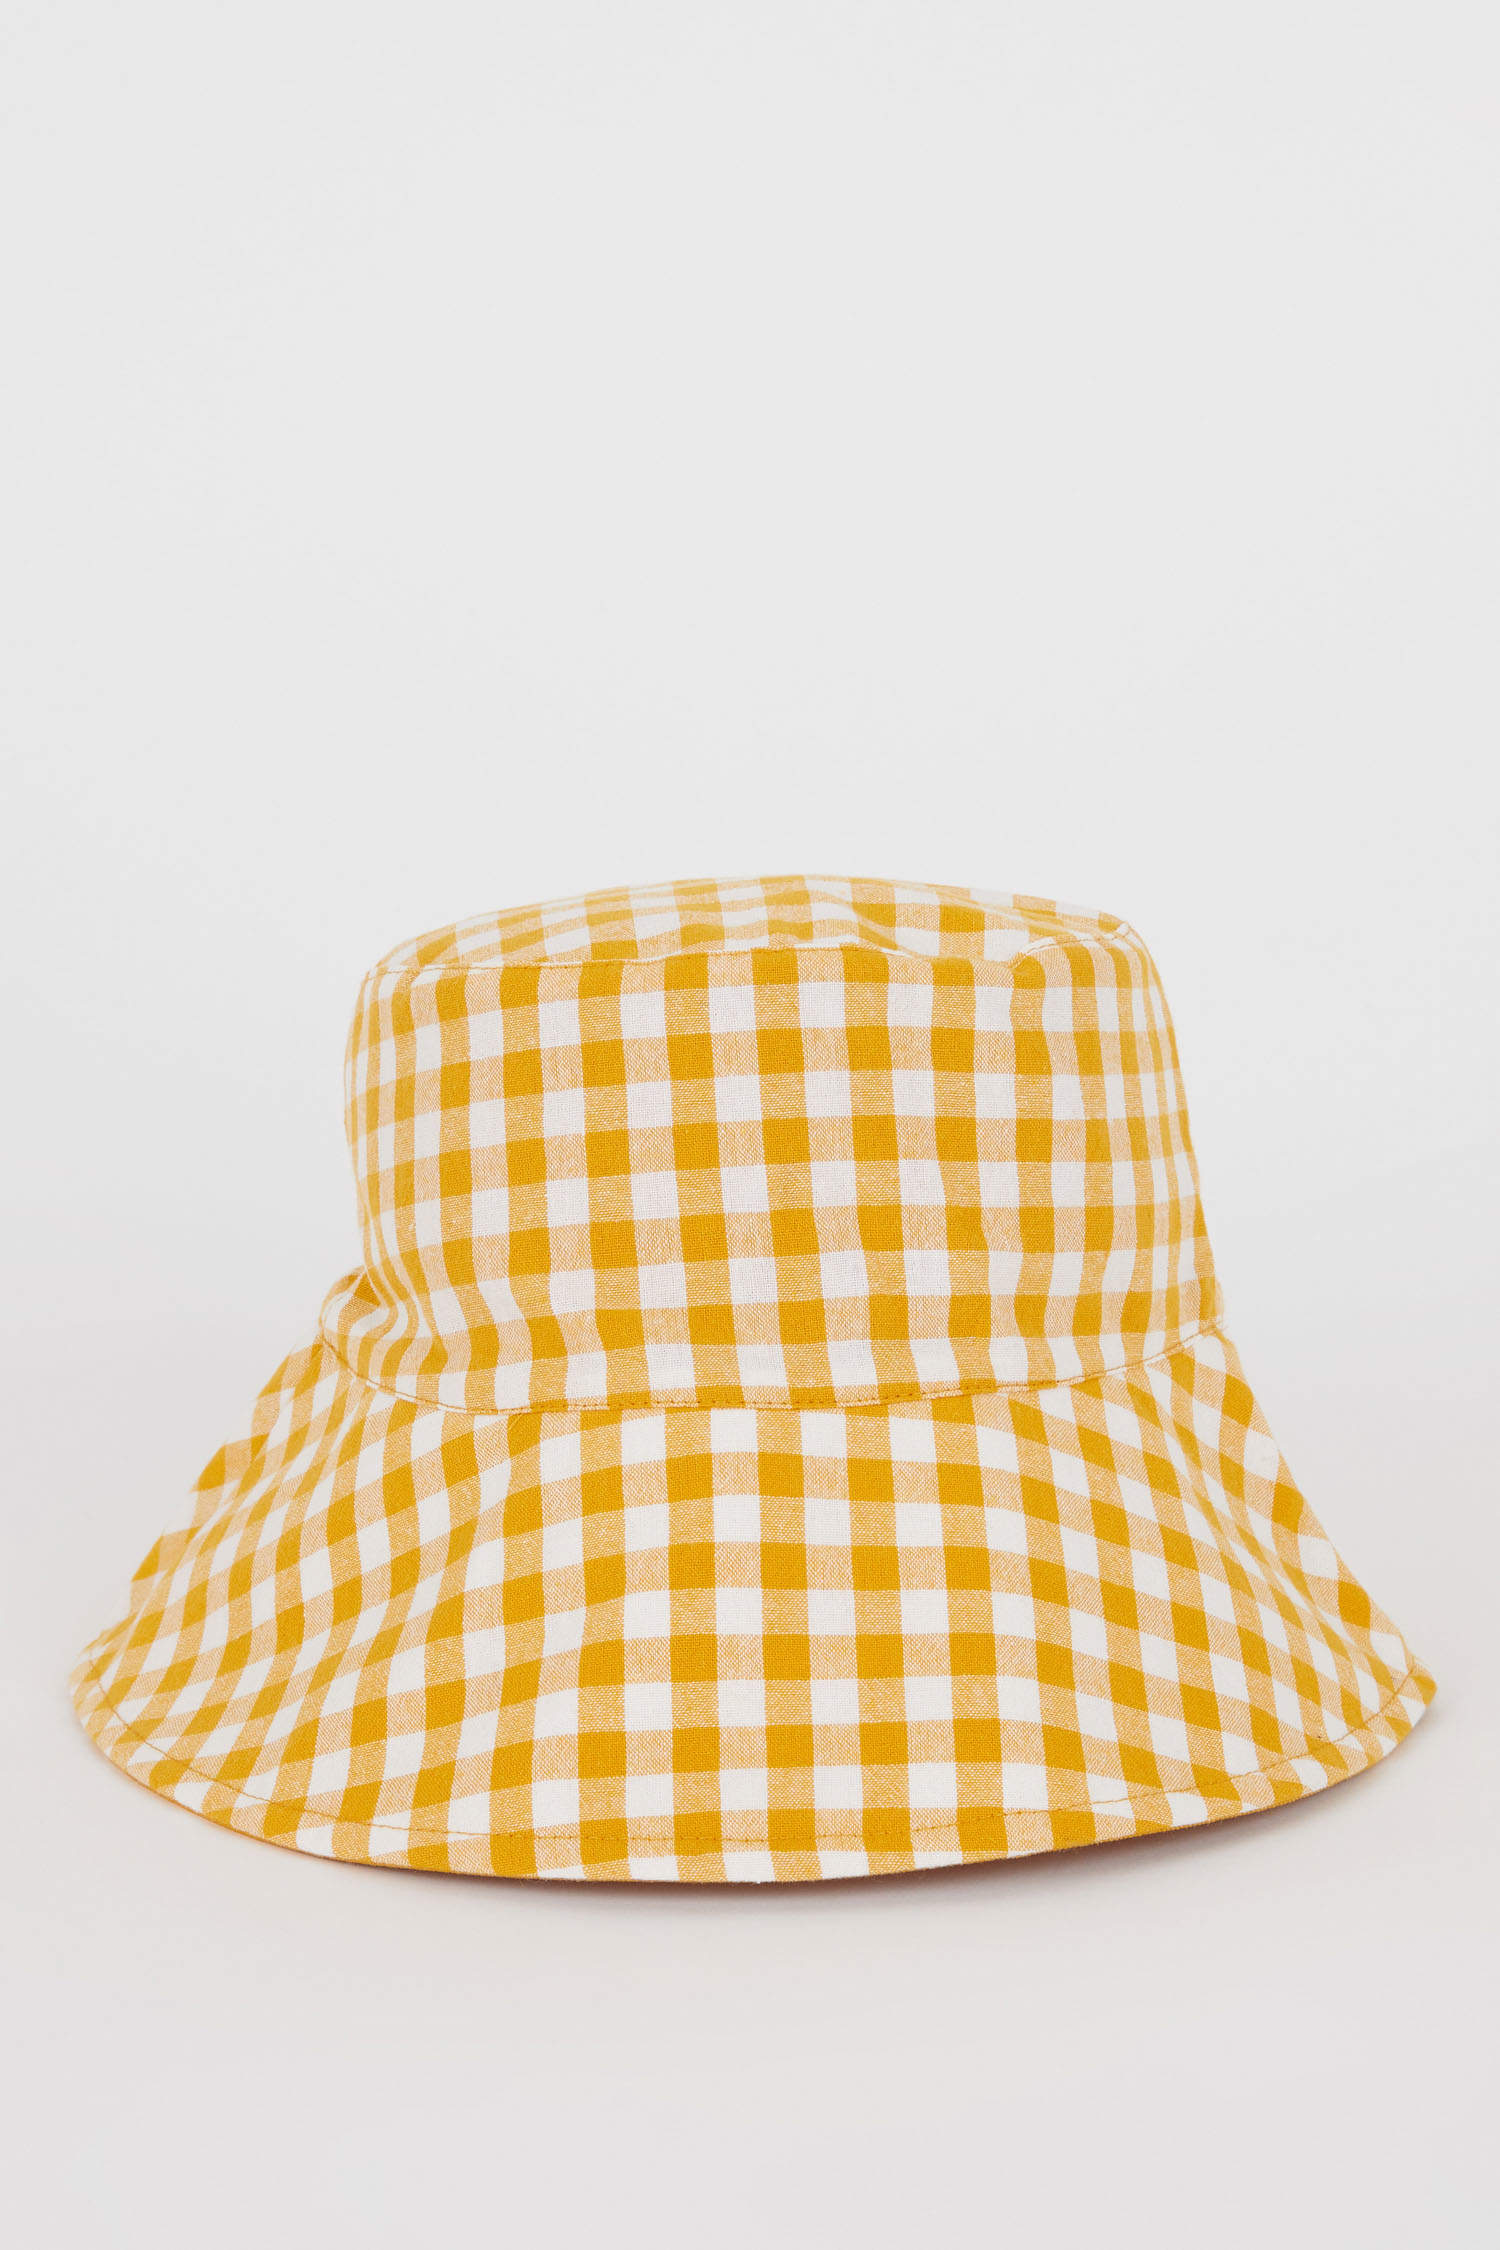 Defacto Kadın Bucket Şapka. 3